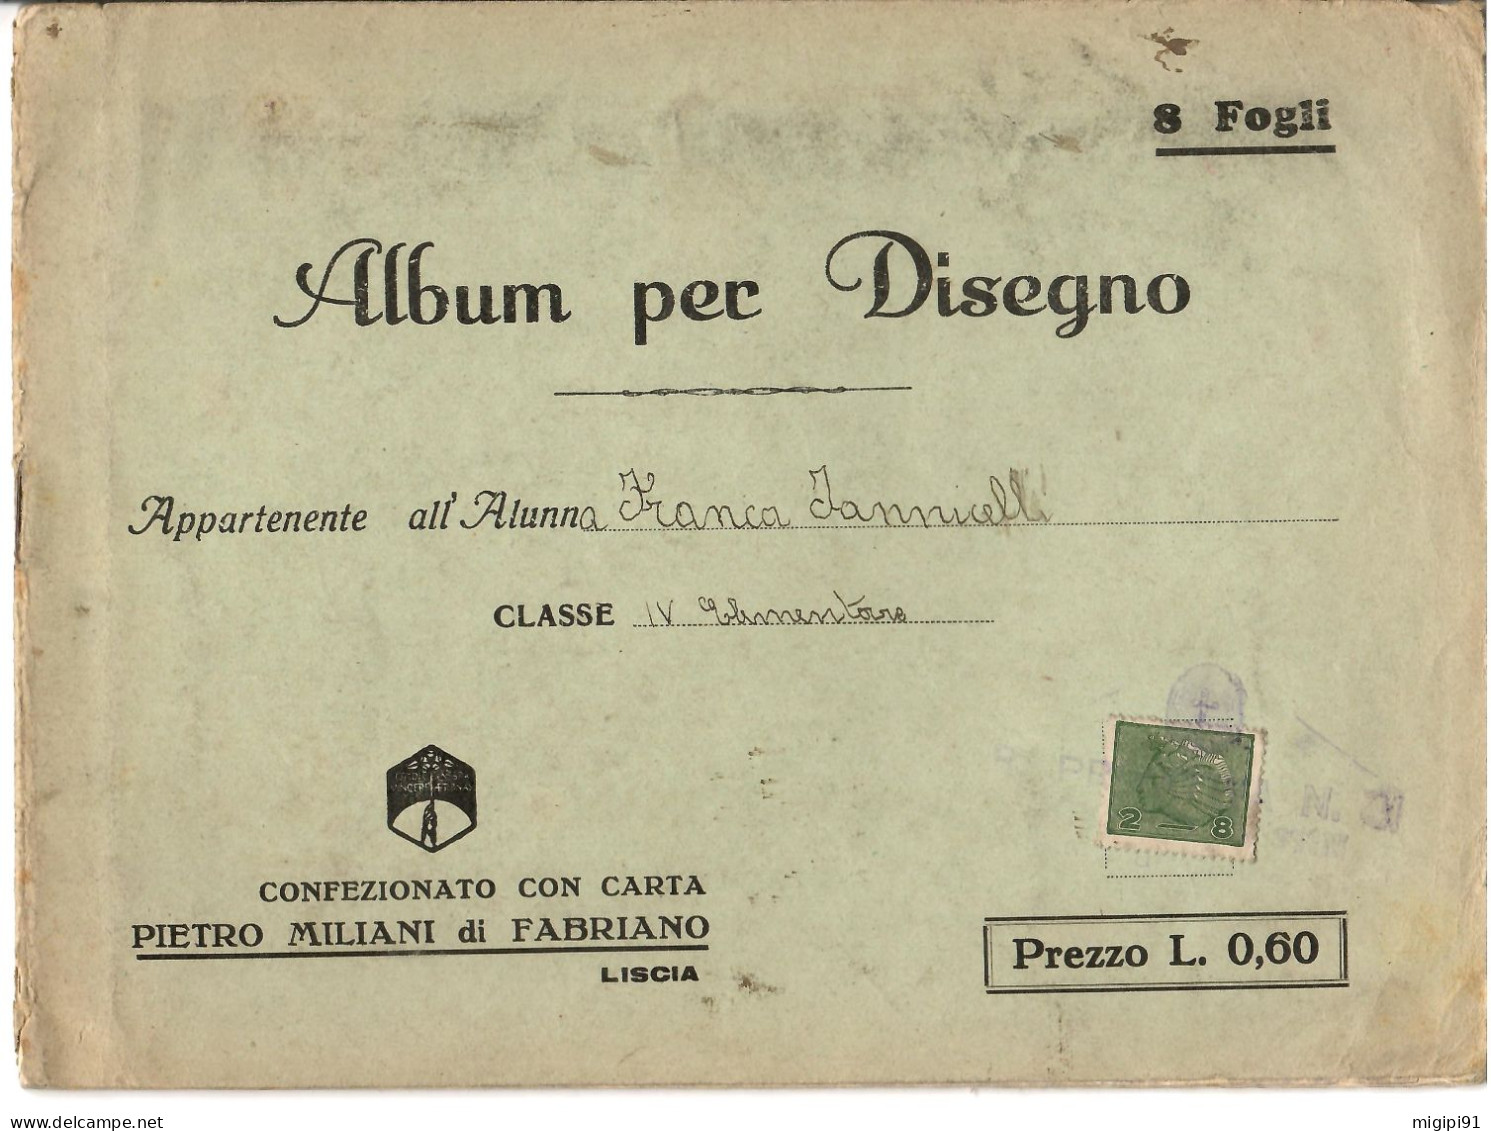 § Album Per Disegno Con Carta PIETRO MILANI Di FABRIANO-COOPERATIVA DI PRODUZIONE E LAVORO FRA CIECHI DI GUERRA§ § - Guerra 1914-18